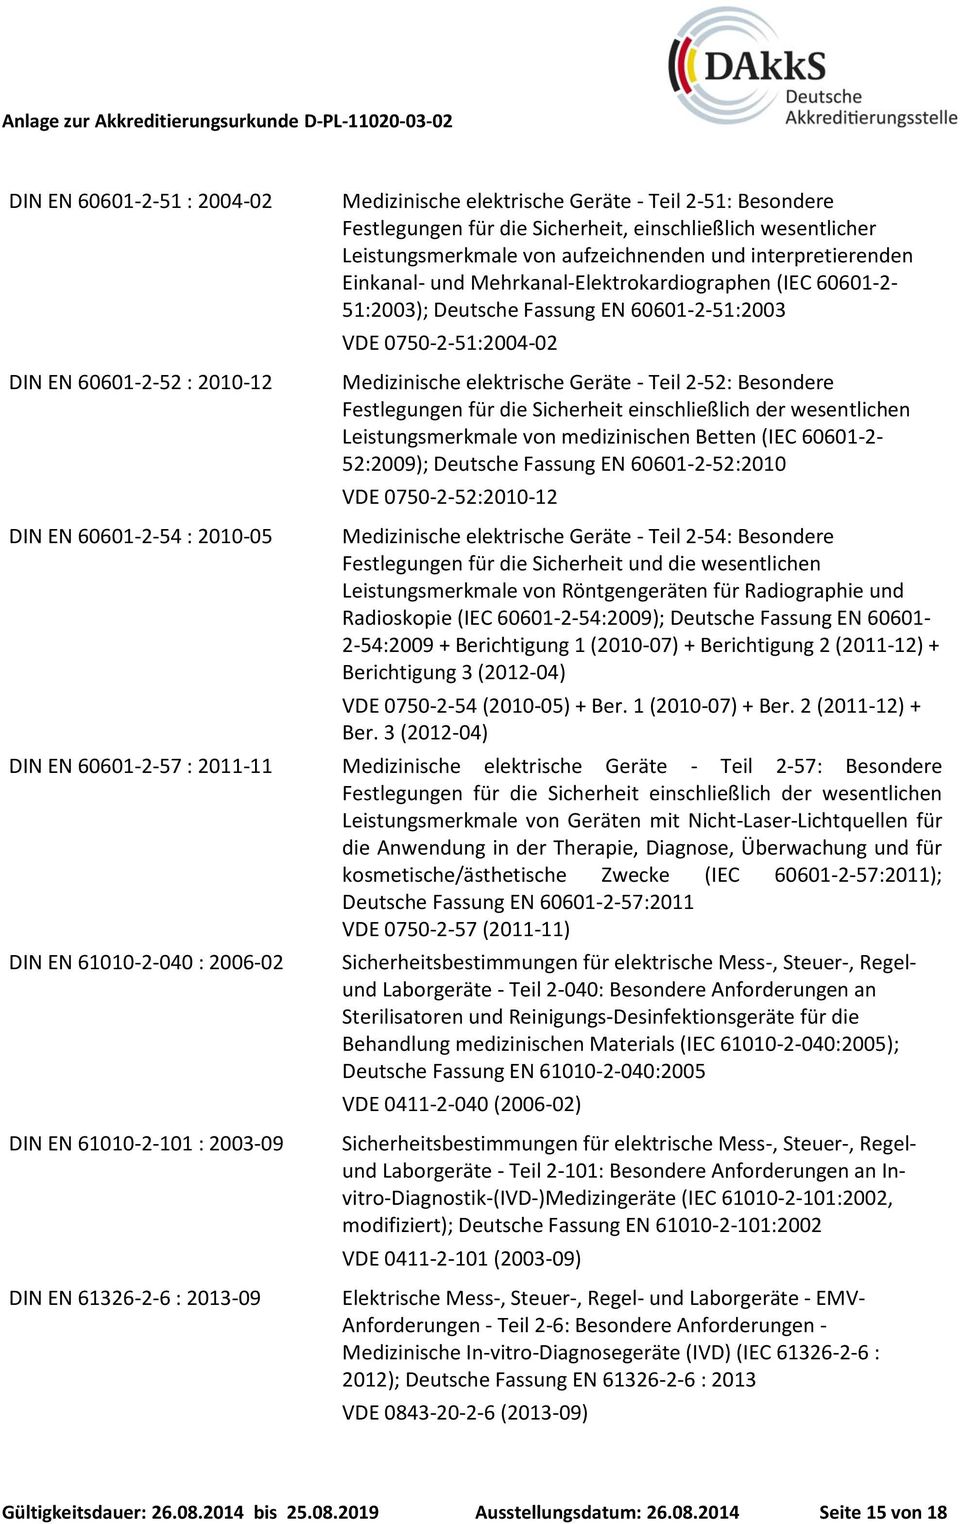 Leistungsmerkmale von medizinischen Betten (IEC 60601-2- 52:2009); Deutsche Fassung EN 60601-2-52:2010 VDE 0750-2-52:2010-12 DIN EN 60601-2-54 : 2010-05 Medizinische elektrische Geräte - Teil 2-54: